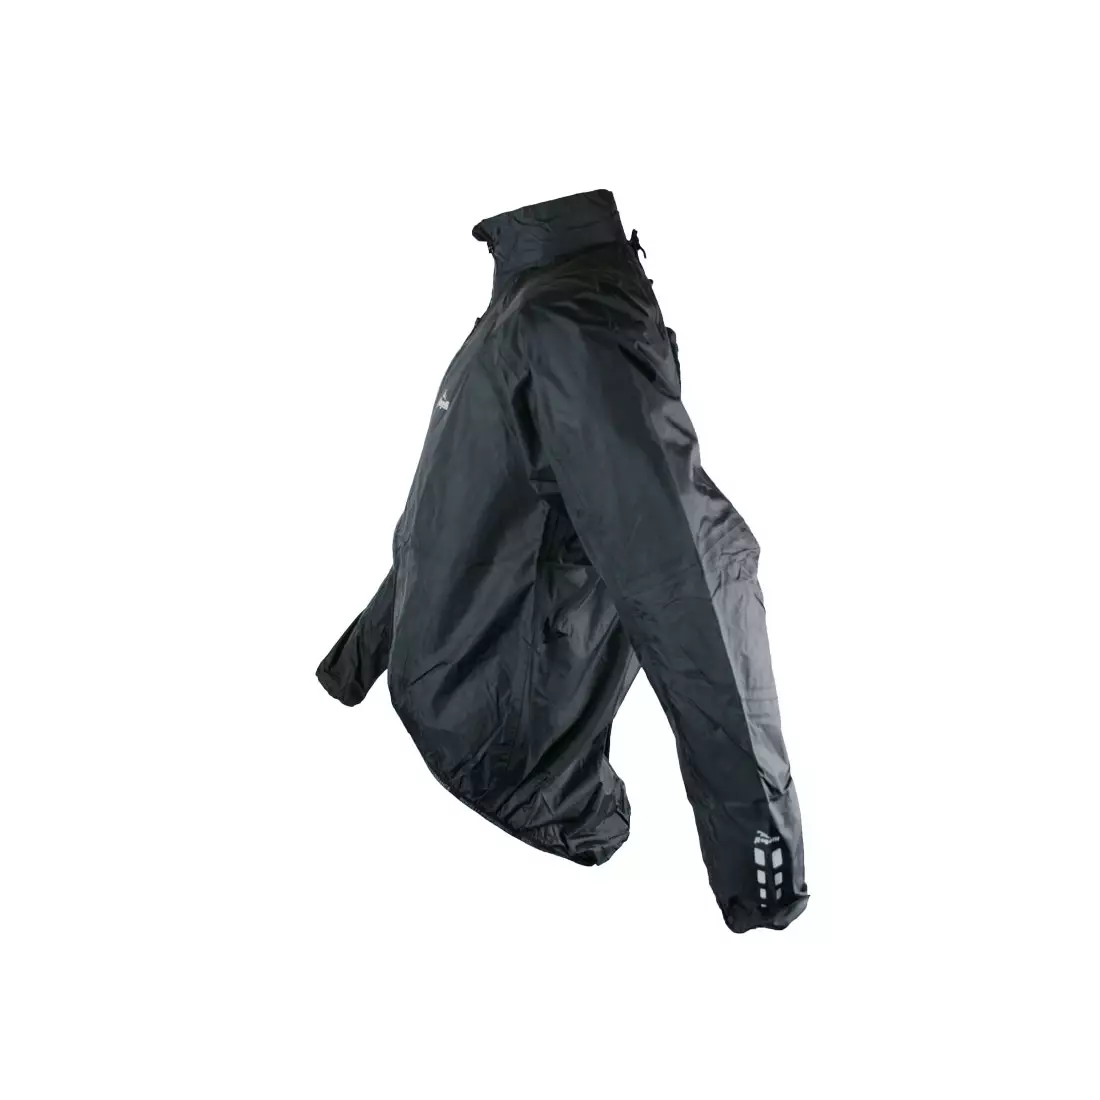 ROGELLI MORRIS - könnyű esőálló kerékpáros kabát